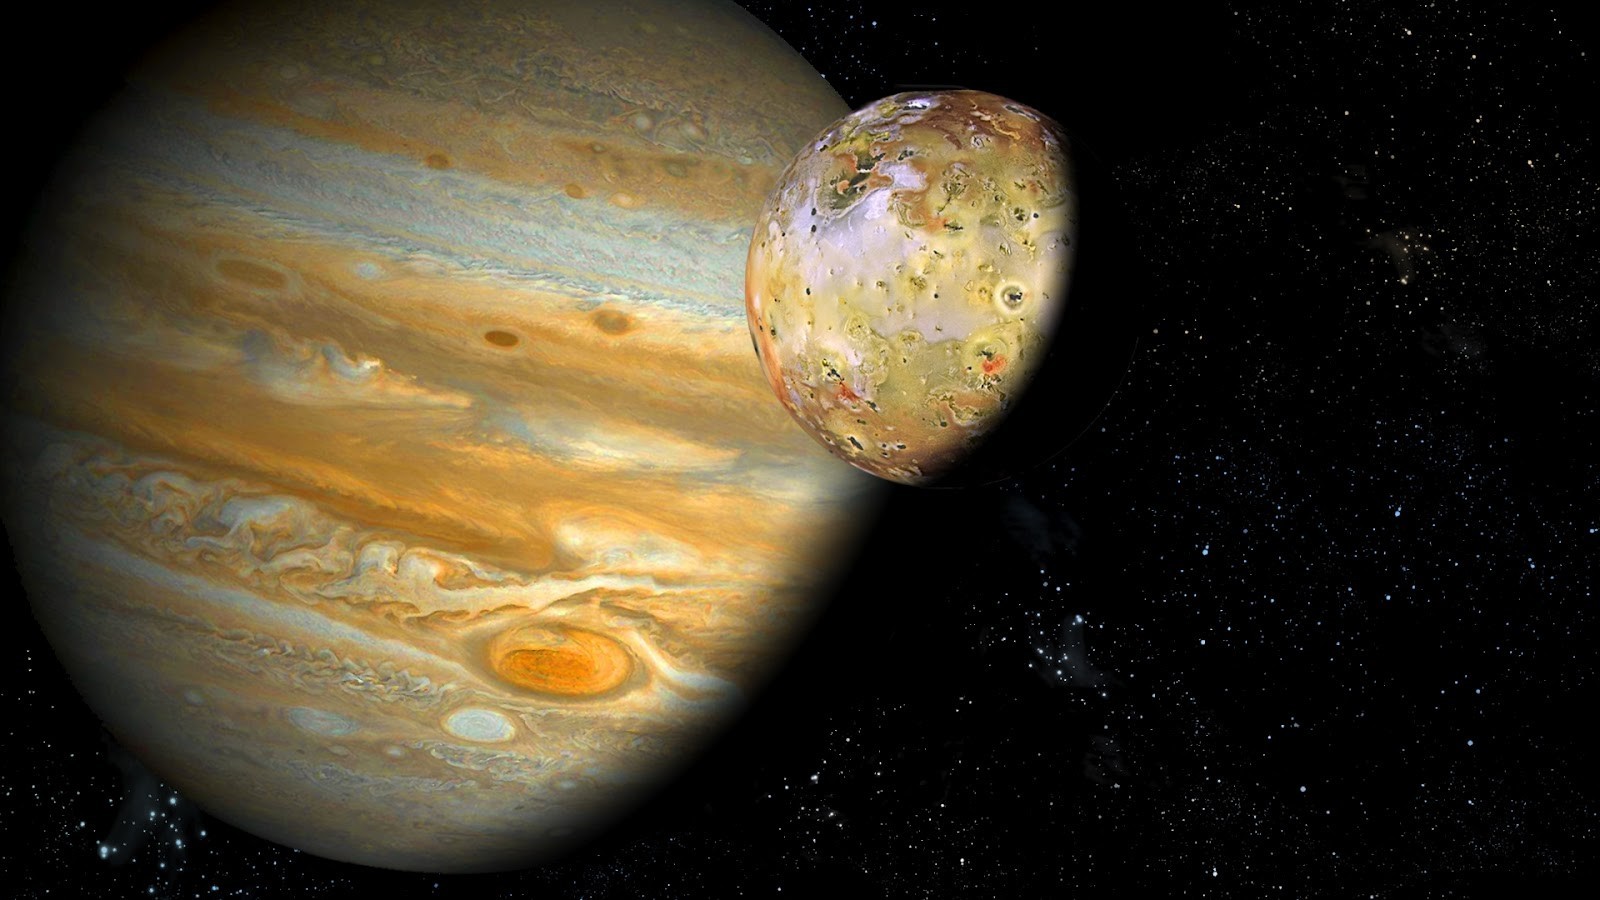 Сверхдетальные снимки Юпитера получены при помощи телескопа VLT